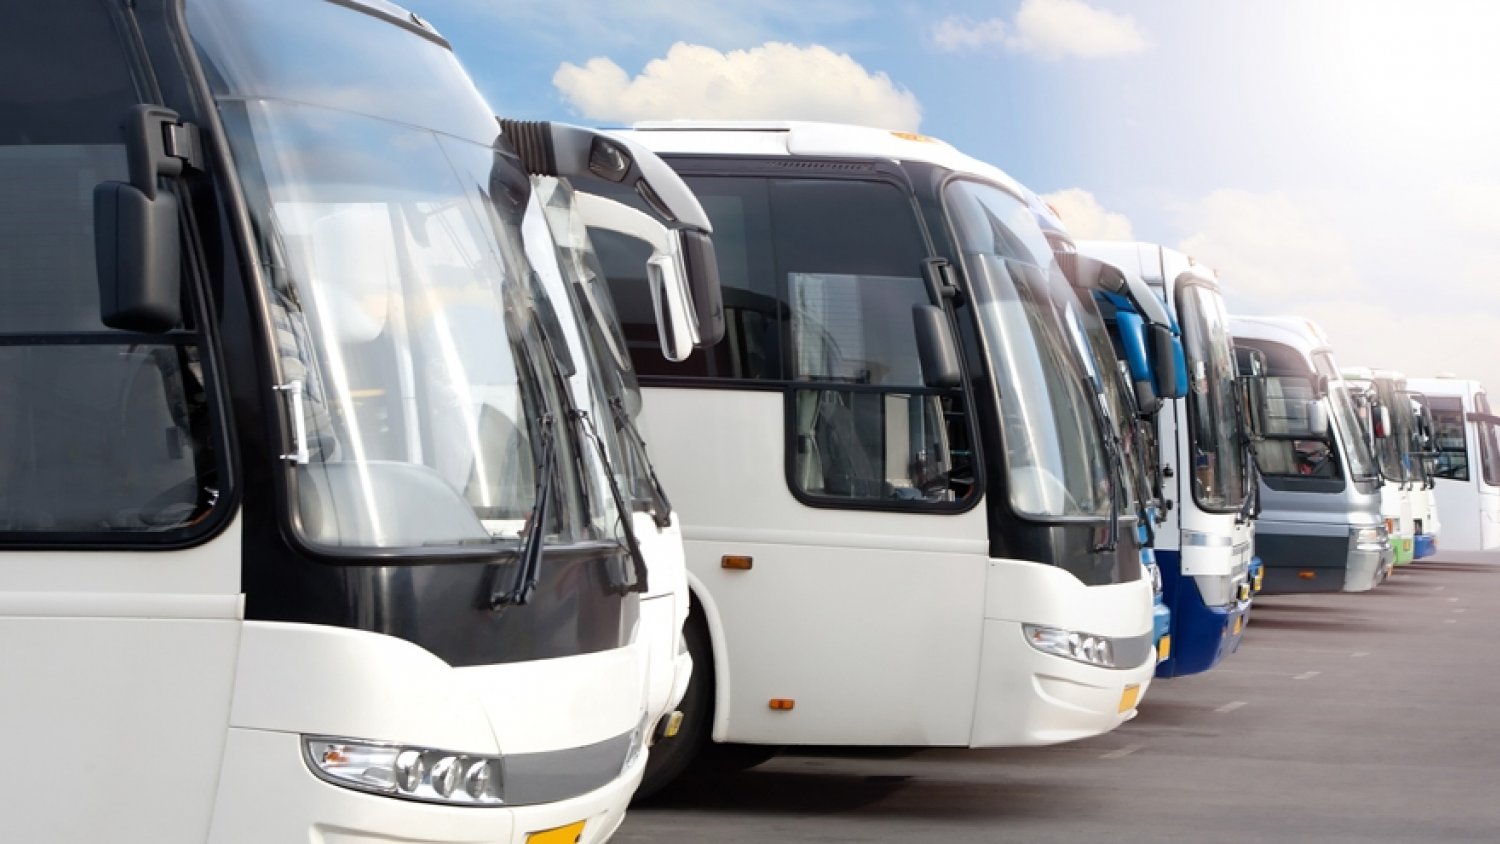 APETAM solicita la suspensión del Impuesto IVTM en 2020 para las empresas de autobuses sin actividad